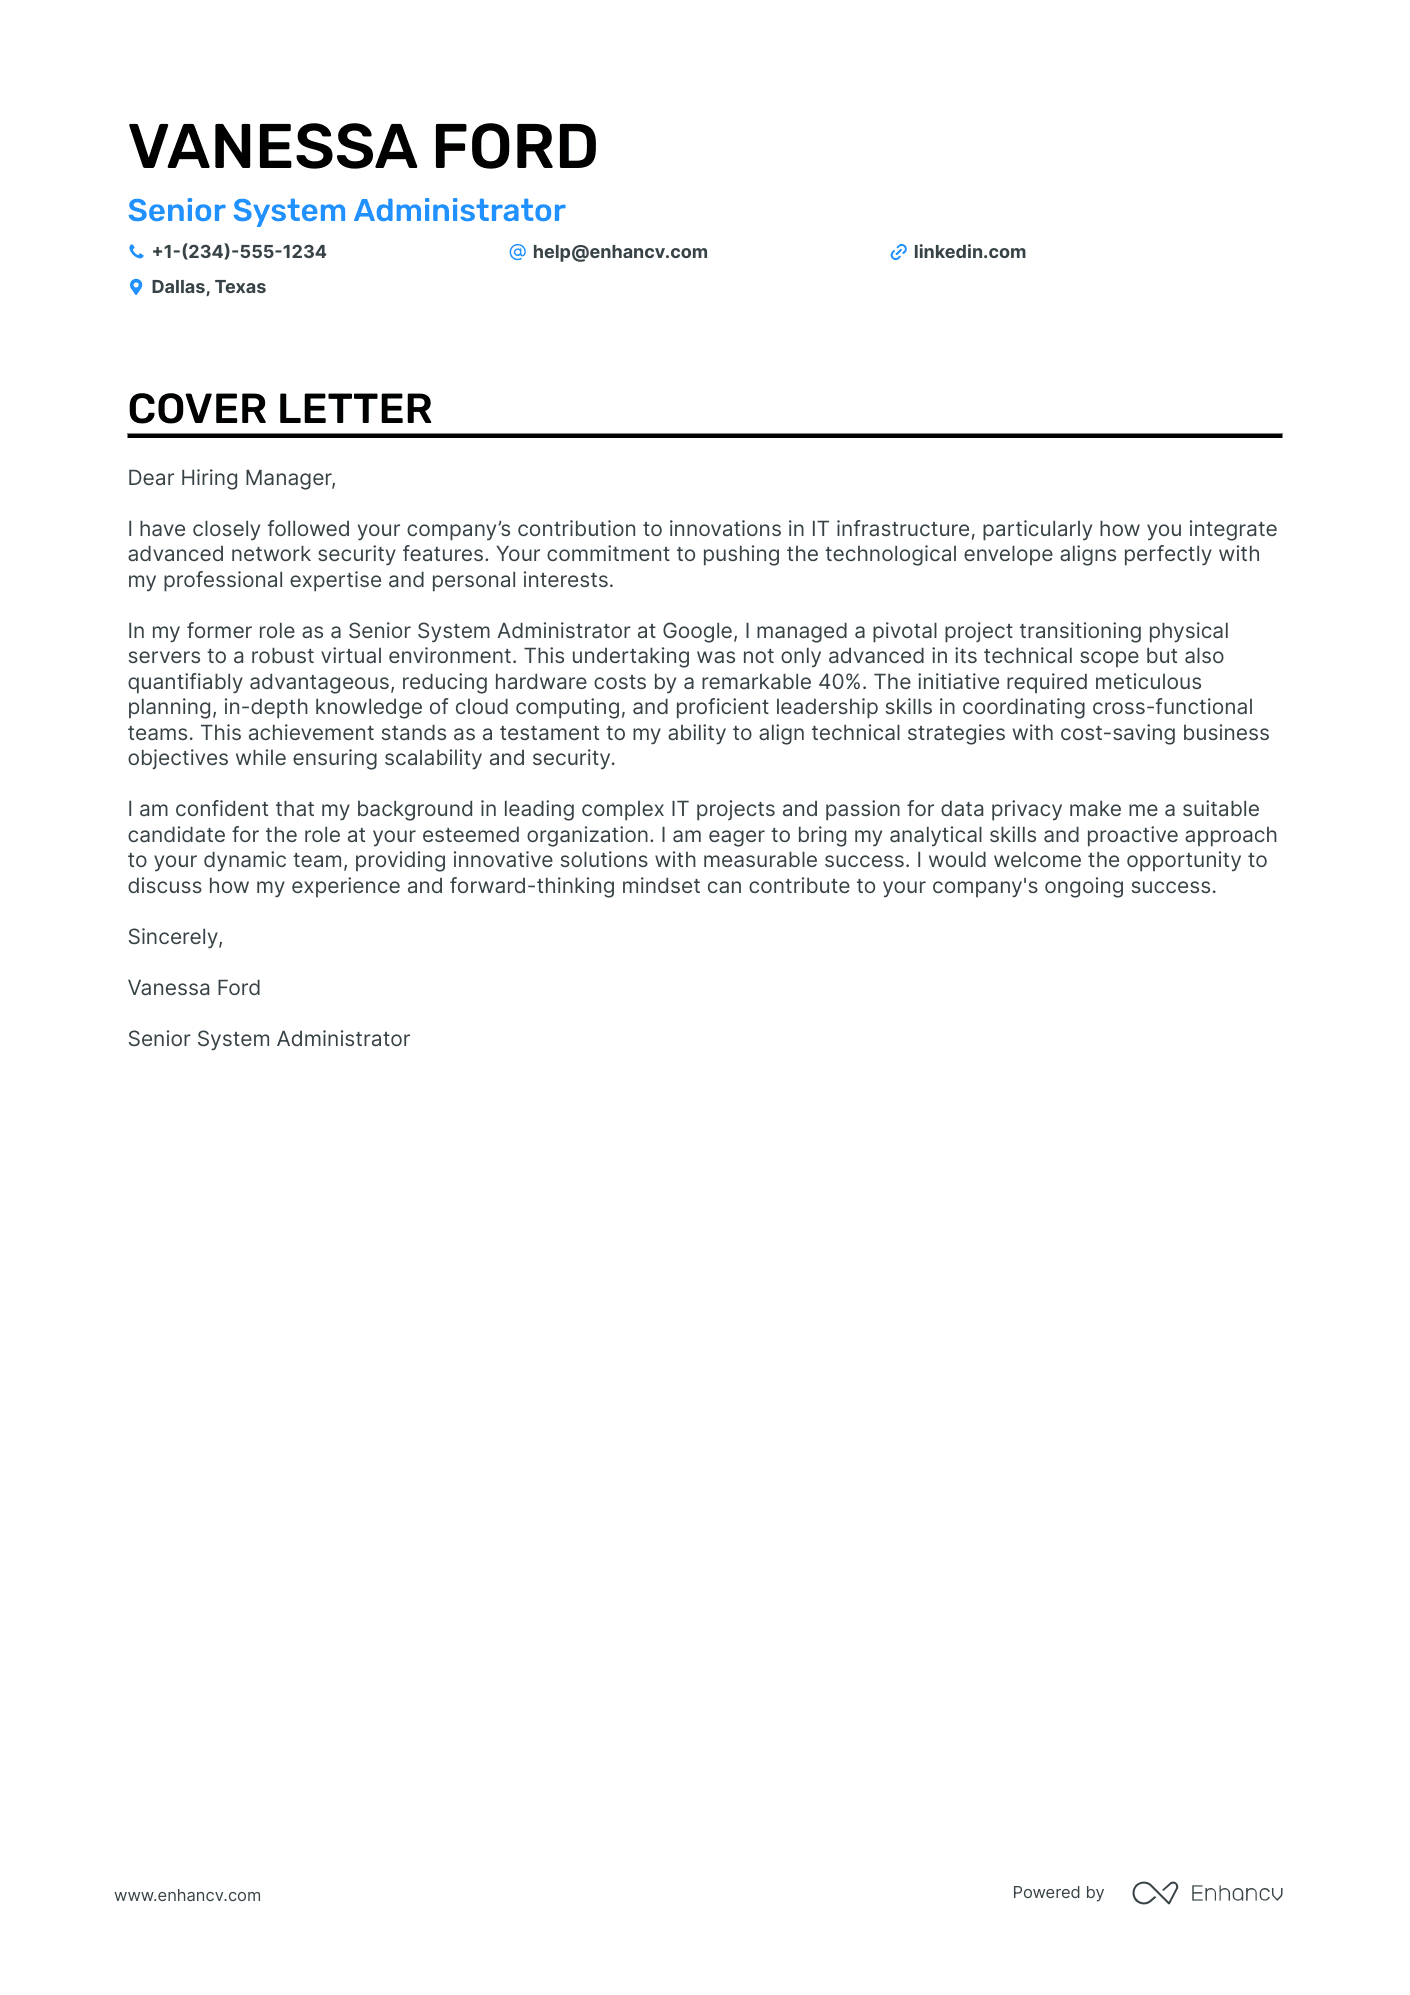 Senior System Administrator cover letter